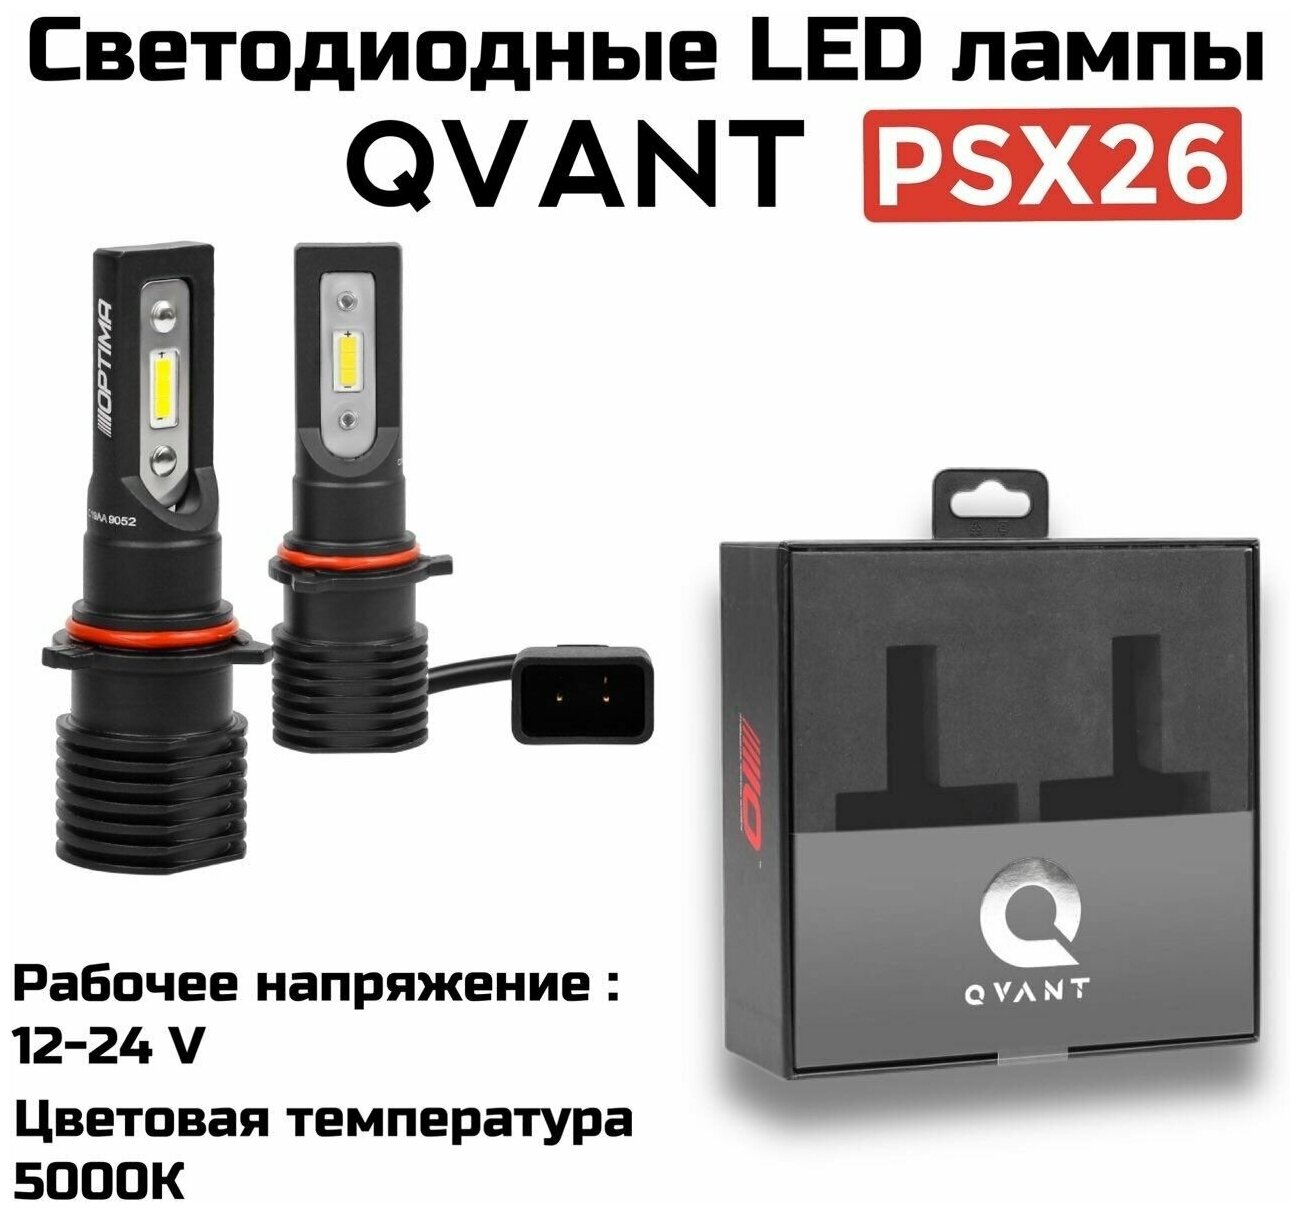 Светодиодные автомобильные лампы Optima LED QVANT PSX26 5000K 12-24V